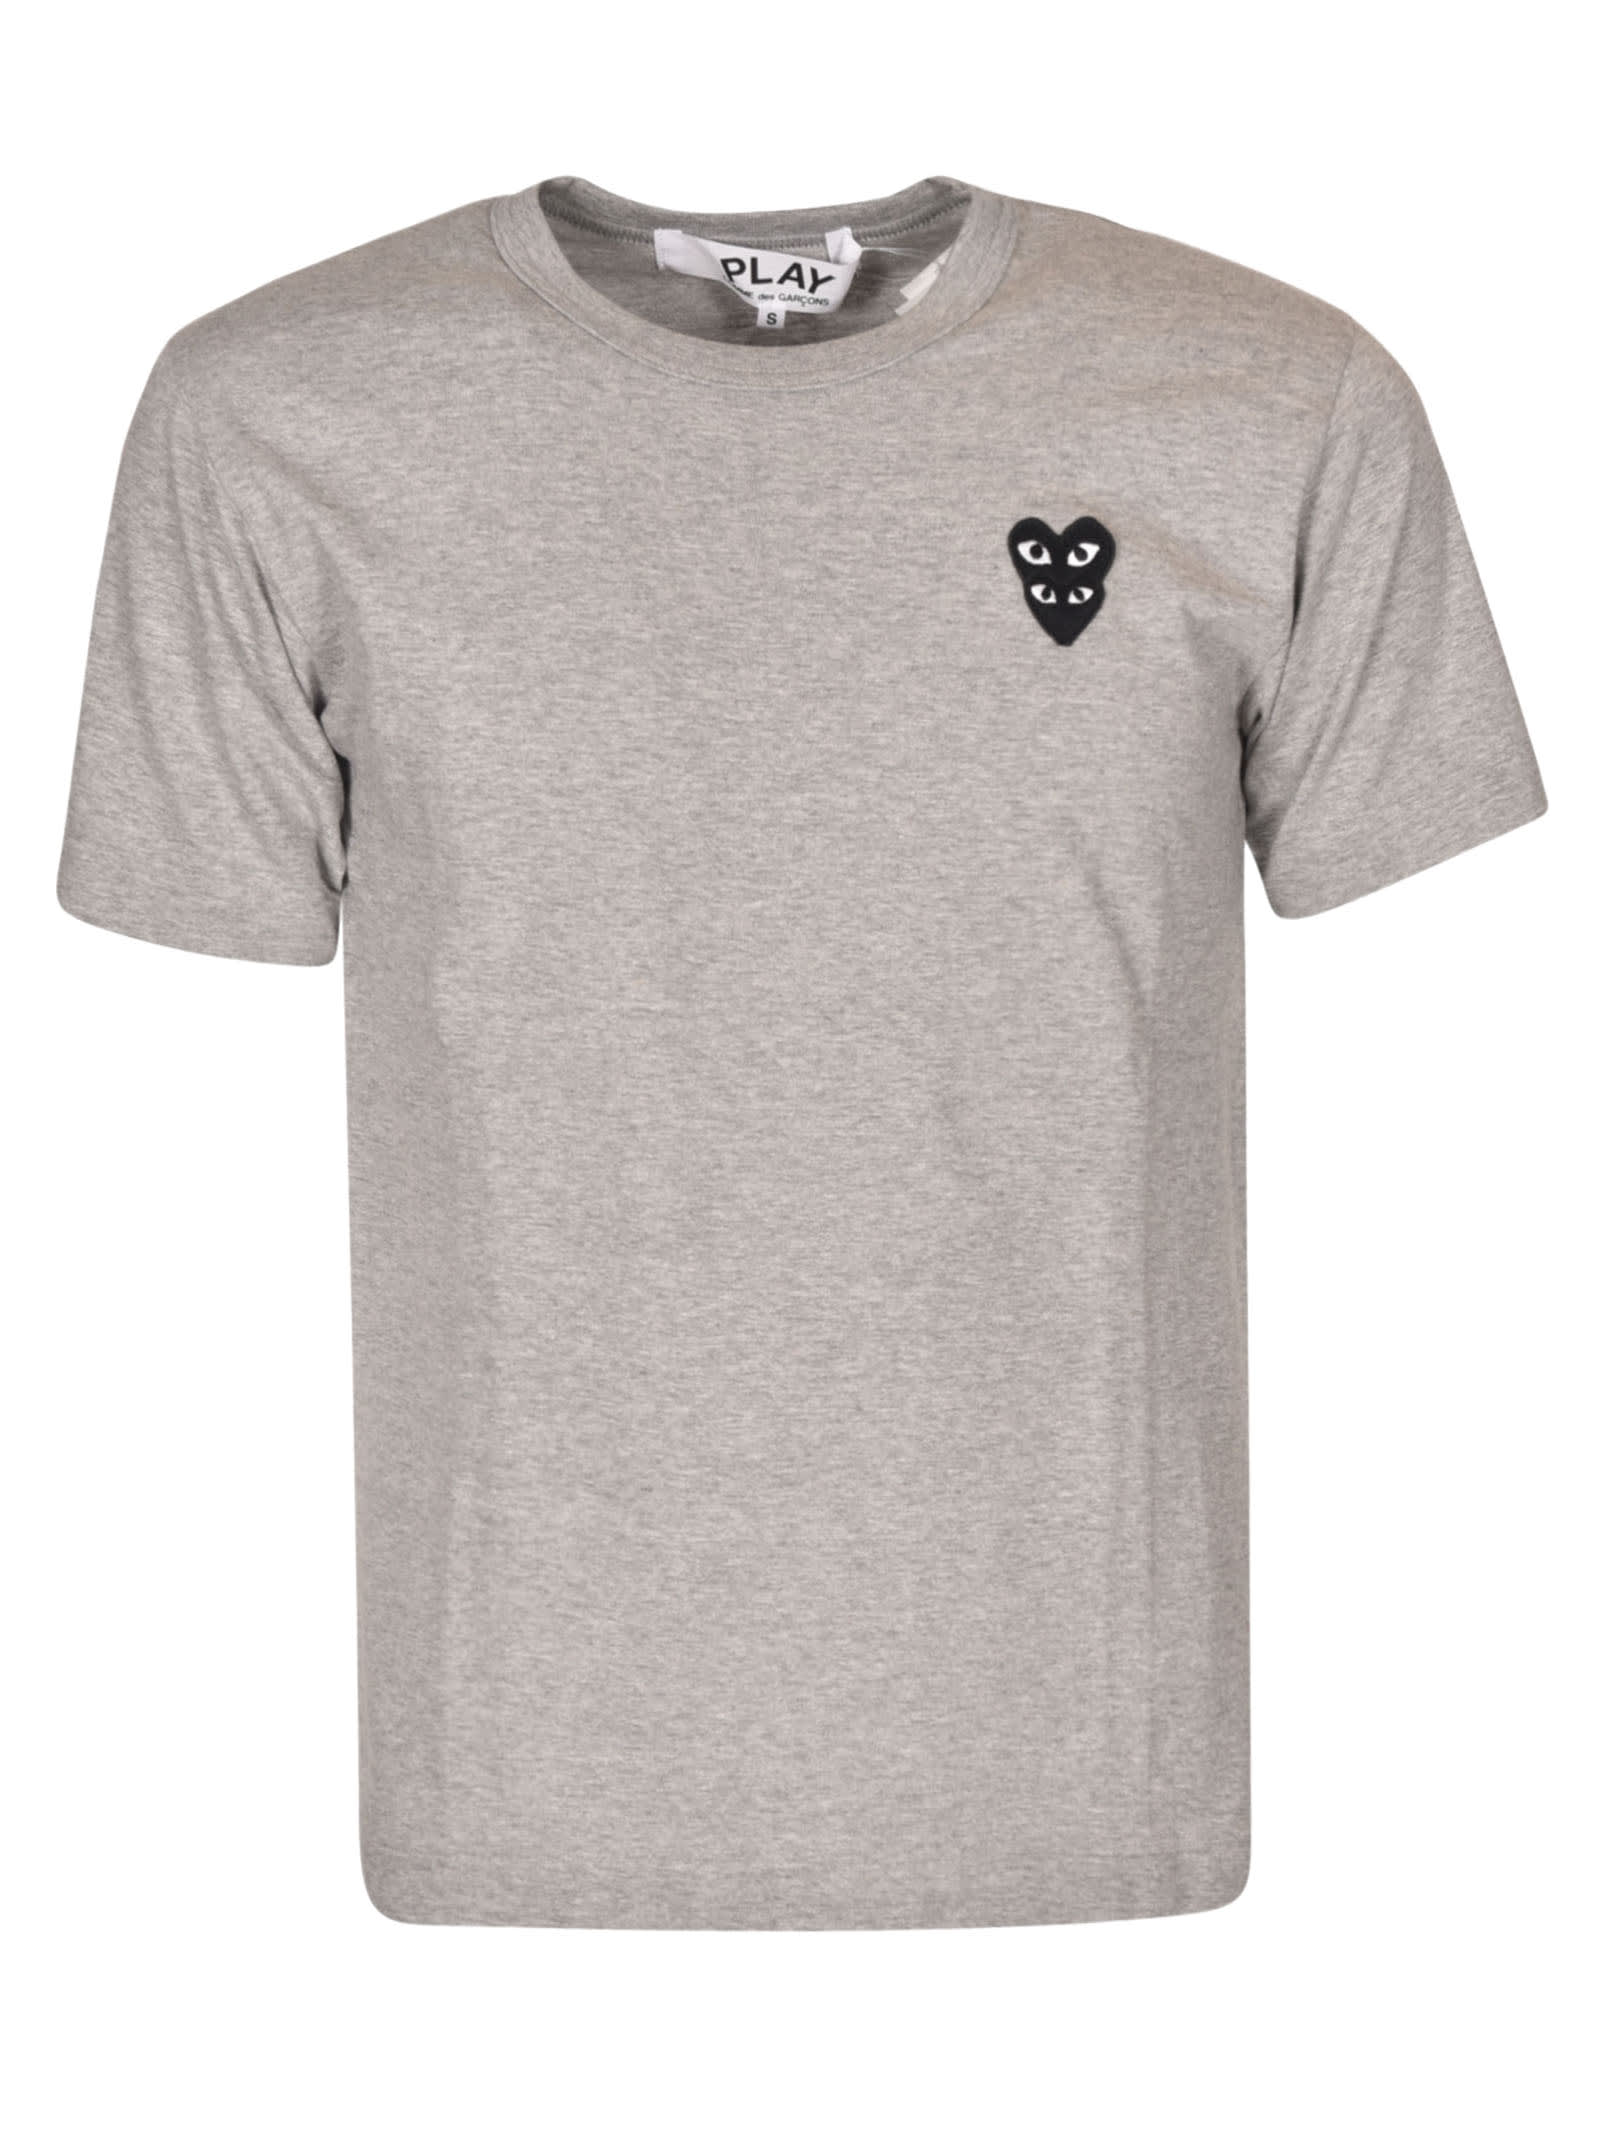 Comme des Garçons Play Heart Patched Regular T-shirt